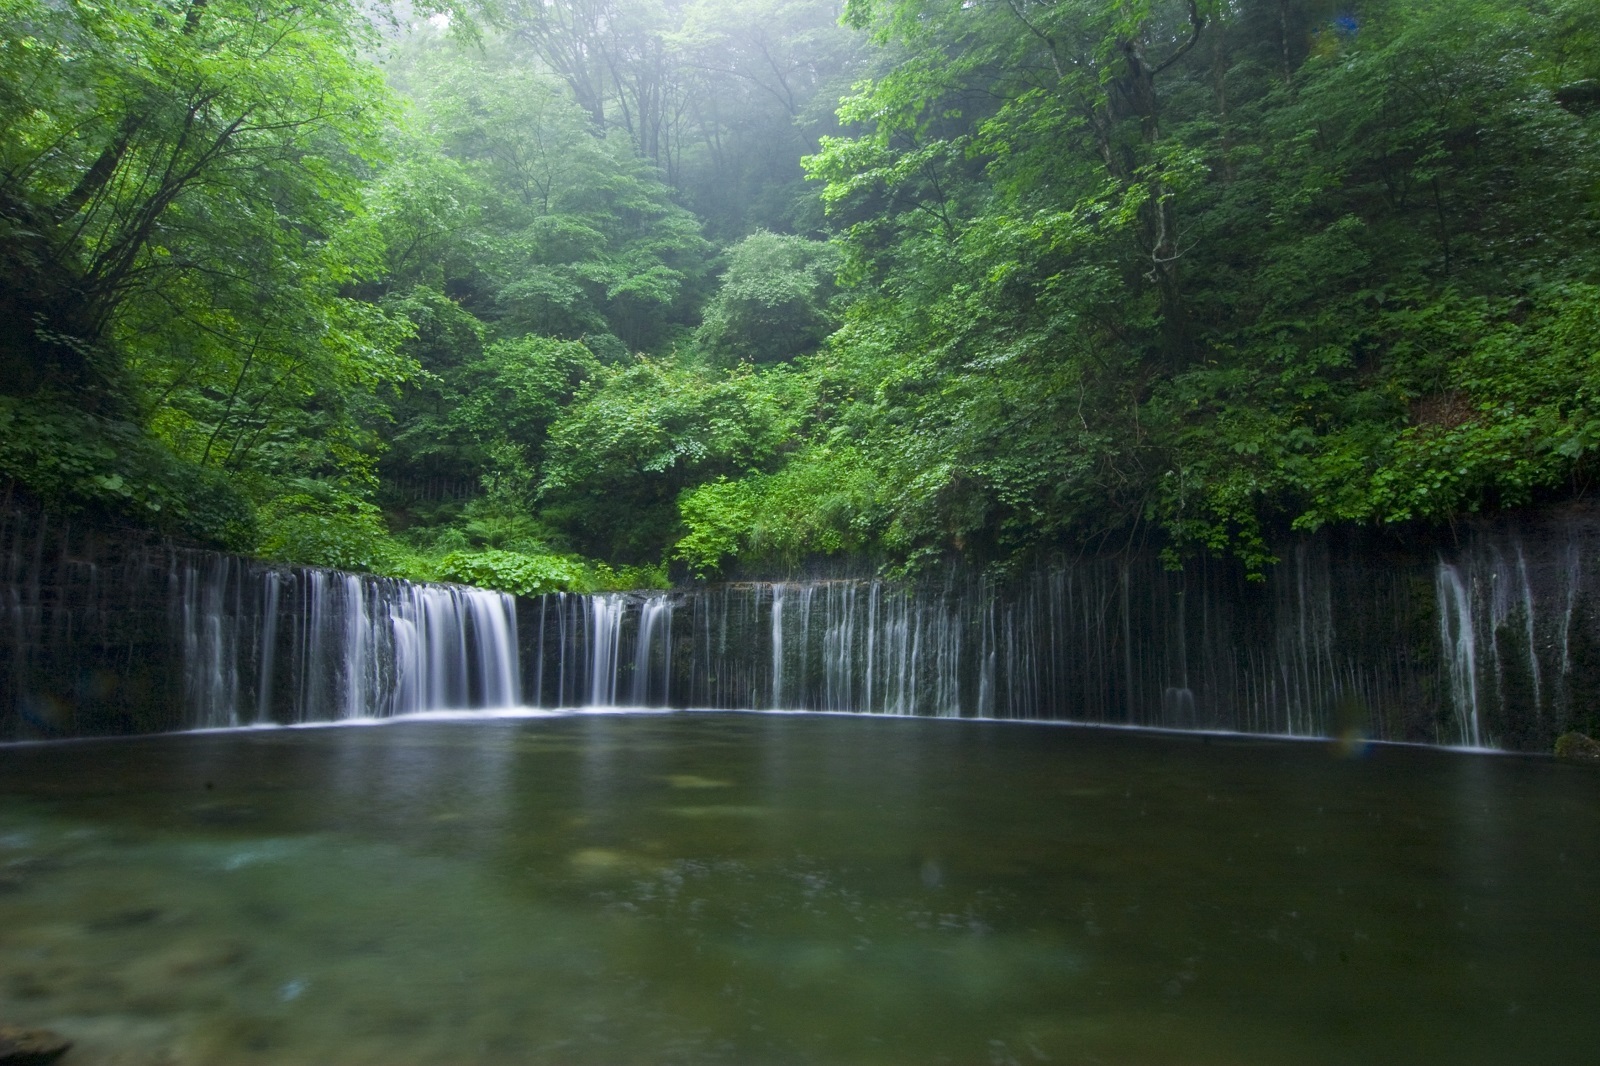 Karuizawa Nagano S Most Popular Sightseeing Spots Highlights Trip Ideas Go Nagano